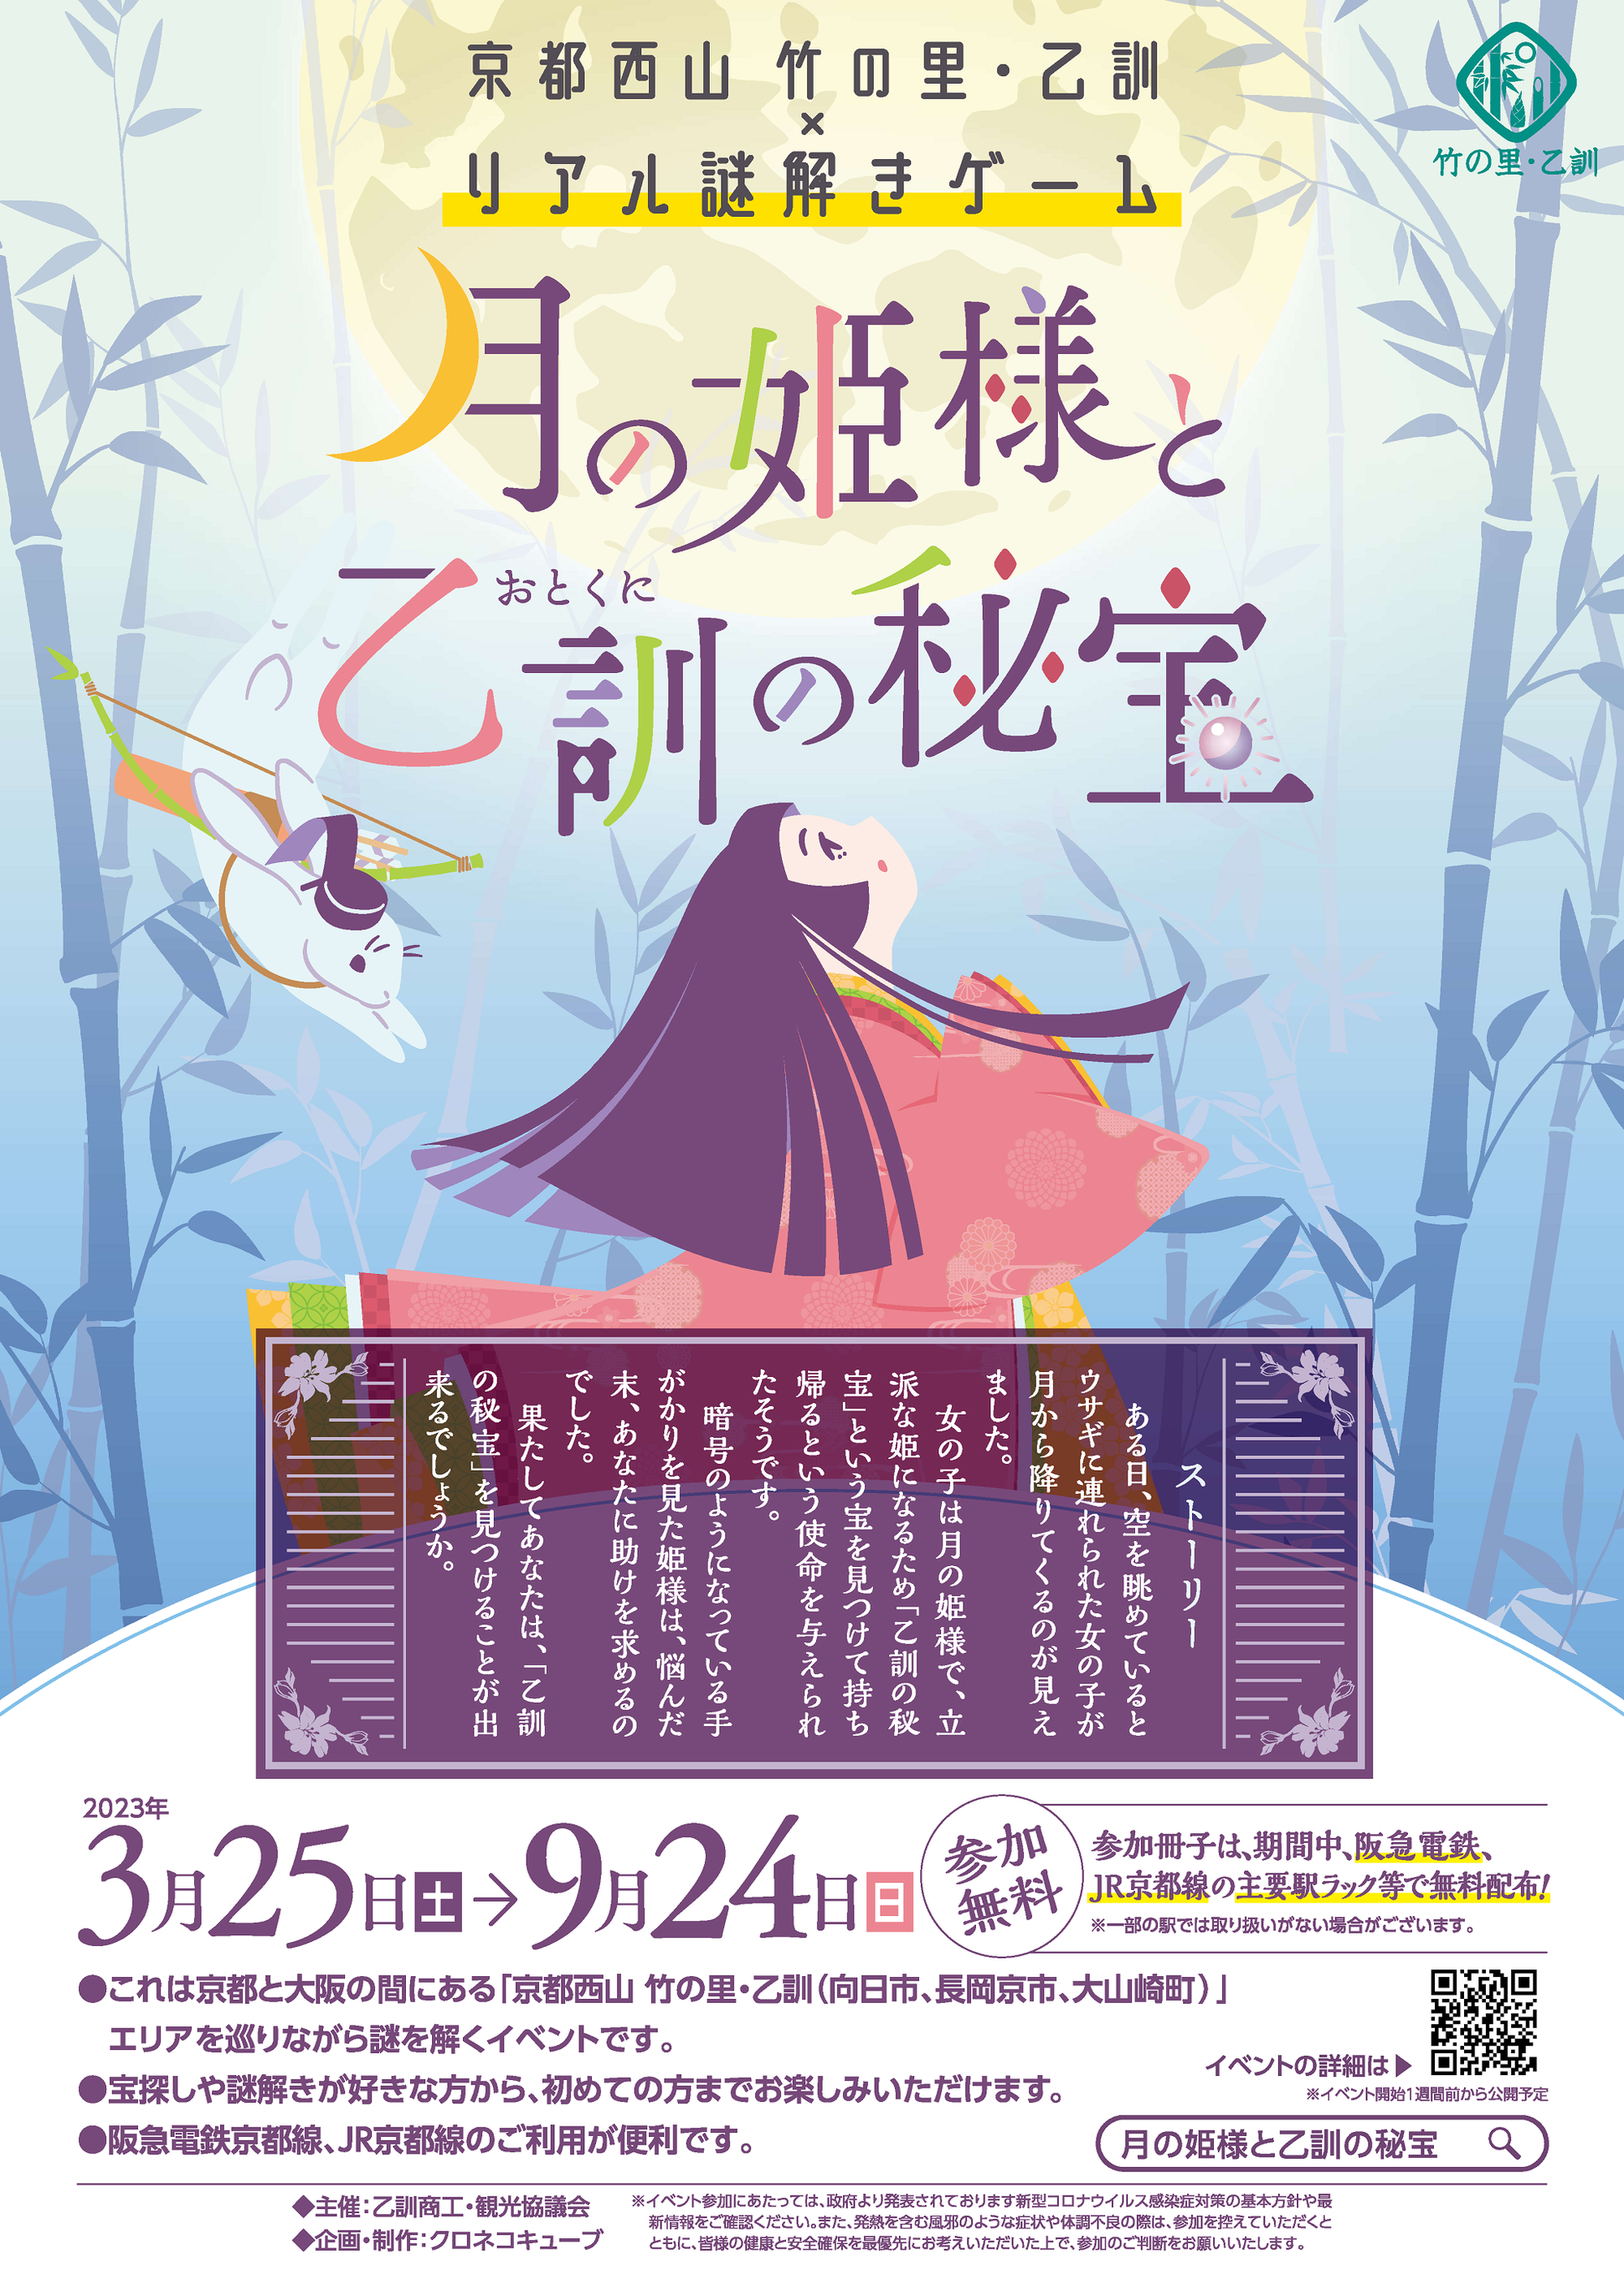 月の姫様と乙訓の秘宝 - クロネコキューブ【謎解きイベント専門の企画